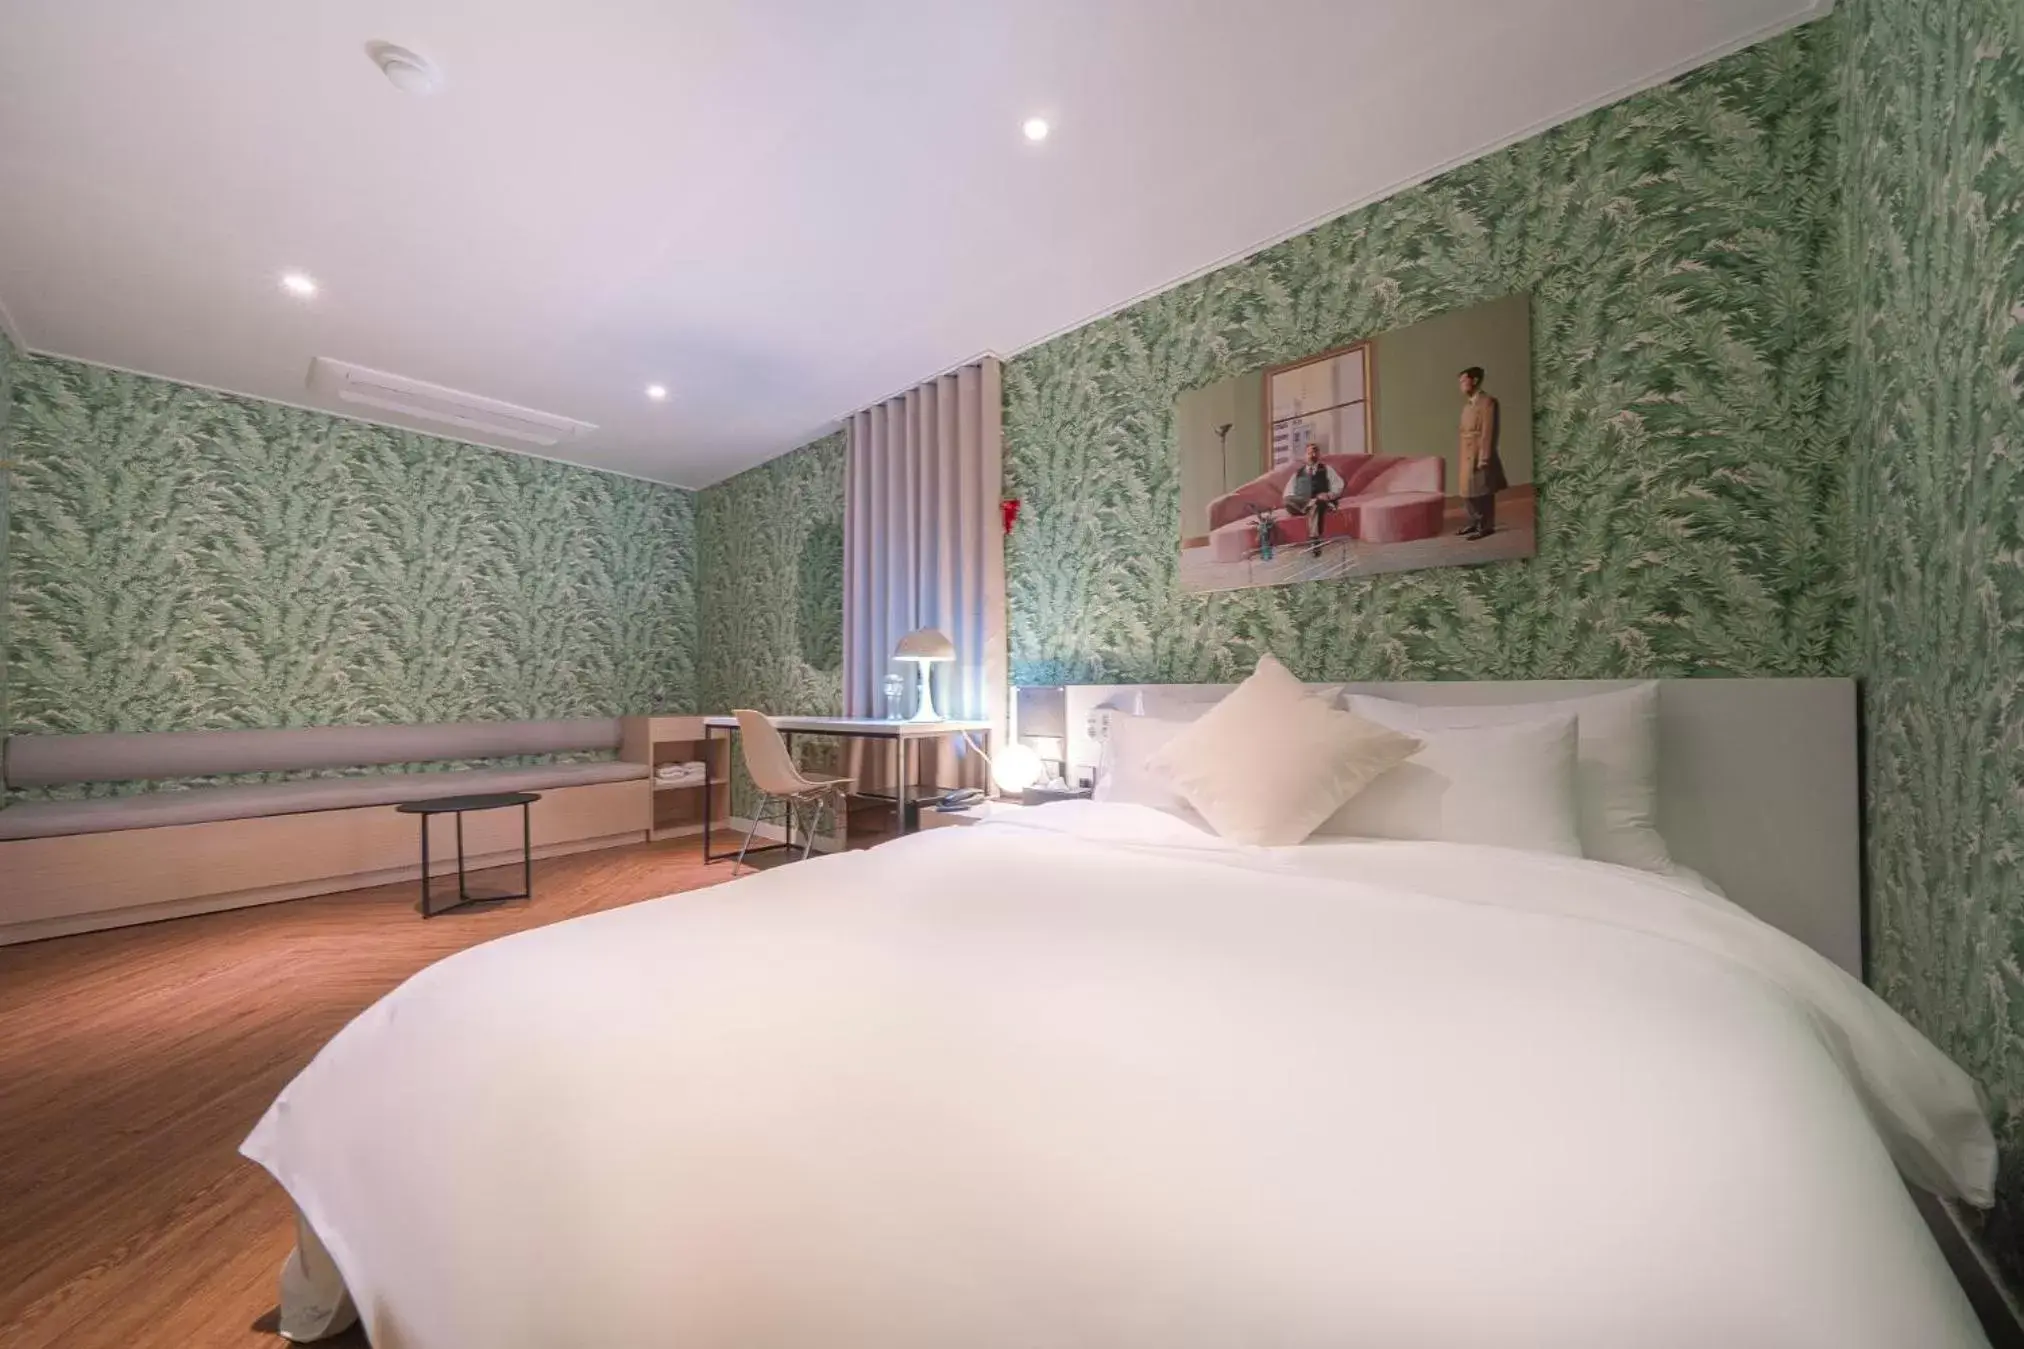 Bedroom, Room Photo in Osan GOYO 37 Hotel